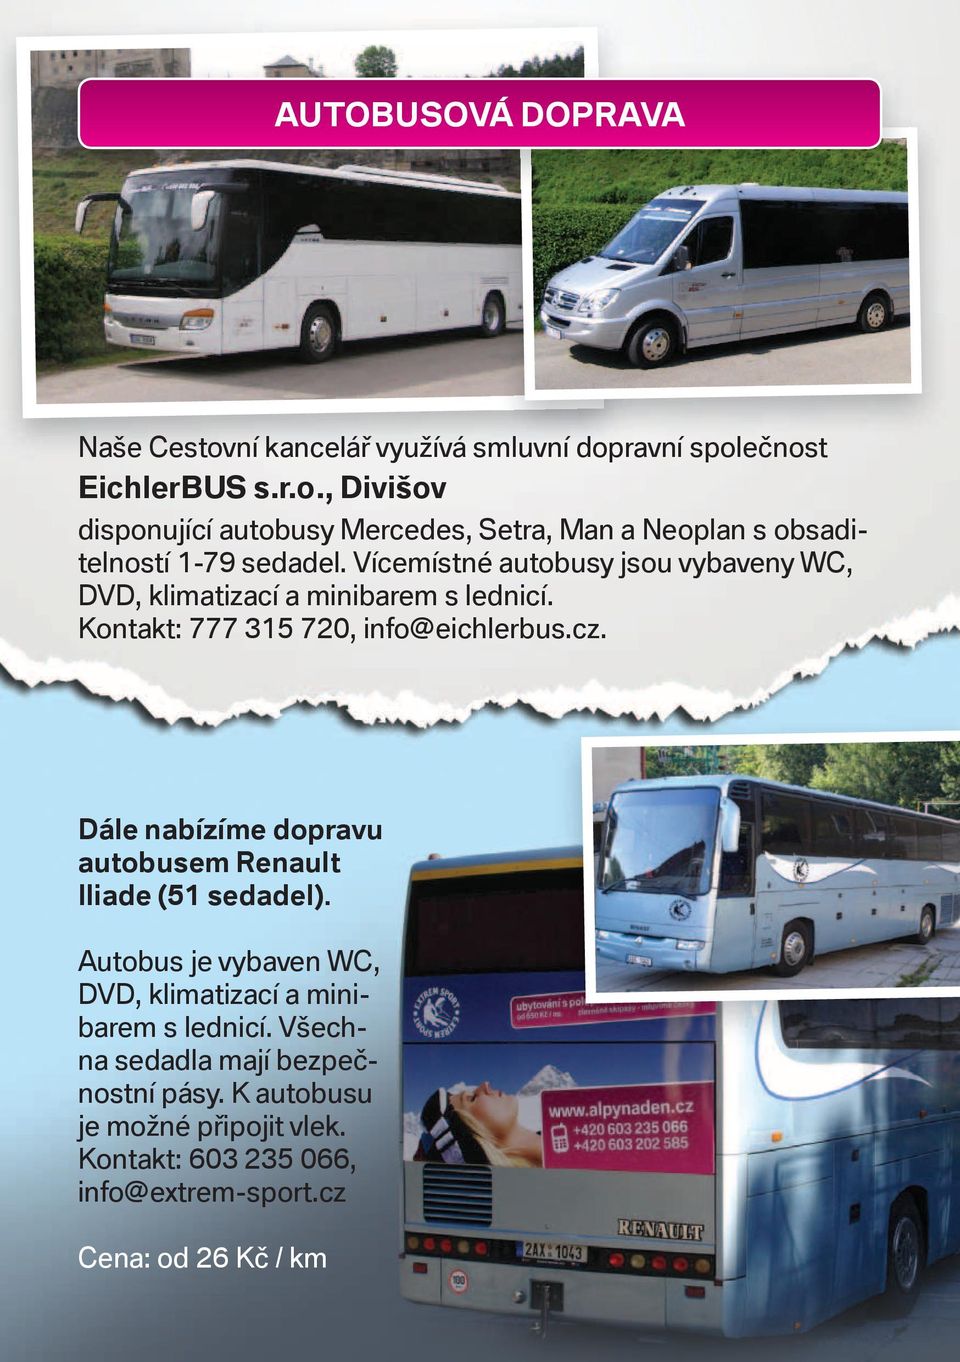 Dále nabízíme dopravu autobusem Renault Iliade (51 sedadel). Autobus je vybaven WC, DVD, klimatizací a minibarem s lednicí.